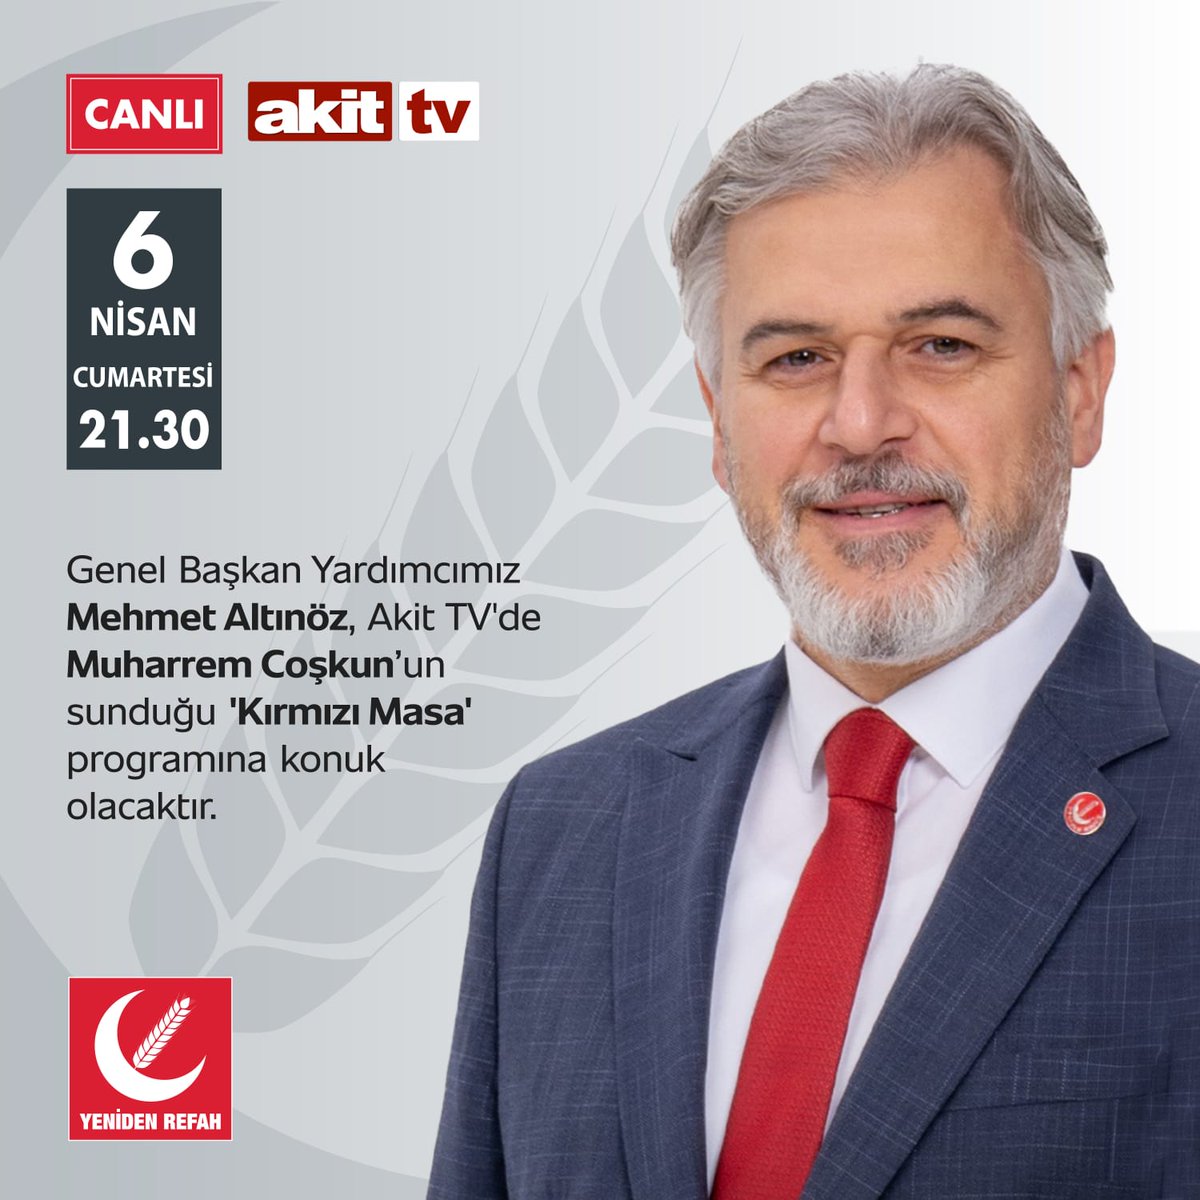 Genel Başkan Yardımcımız Mehmet ALTINÖZ, Akit TV'de Muharrem COŞKUN'un sunduğu 'Kırmızı masa' programına konuk olacaktır. 📅 6 Nisan Cumartesi 🕐 21.30 📡 Akit TV